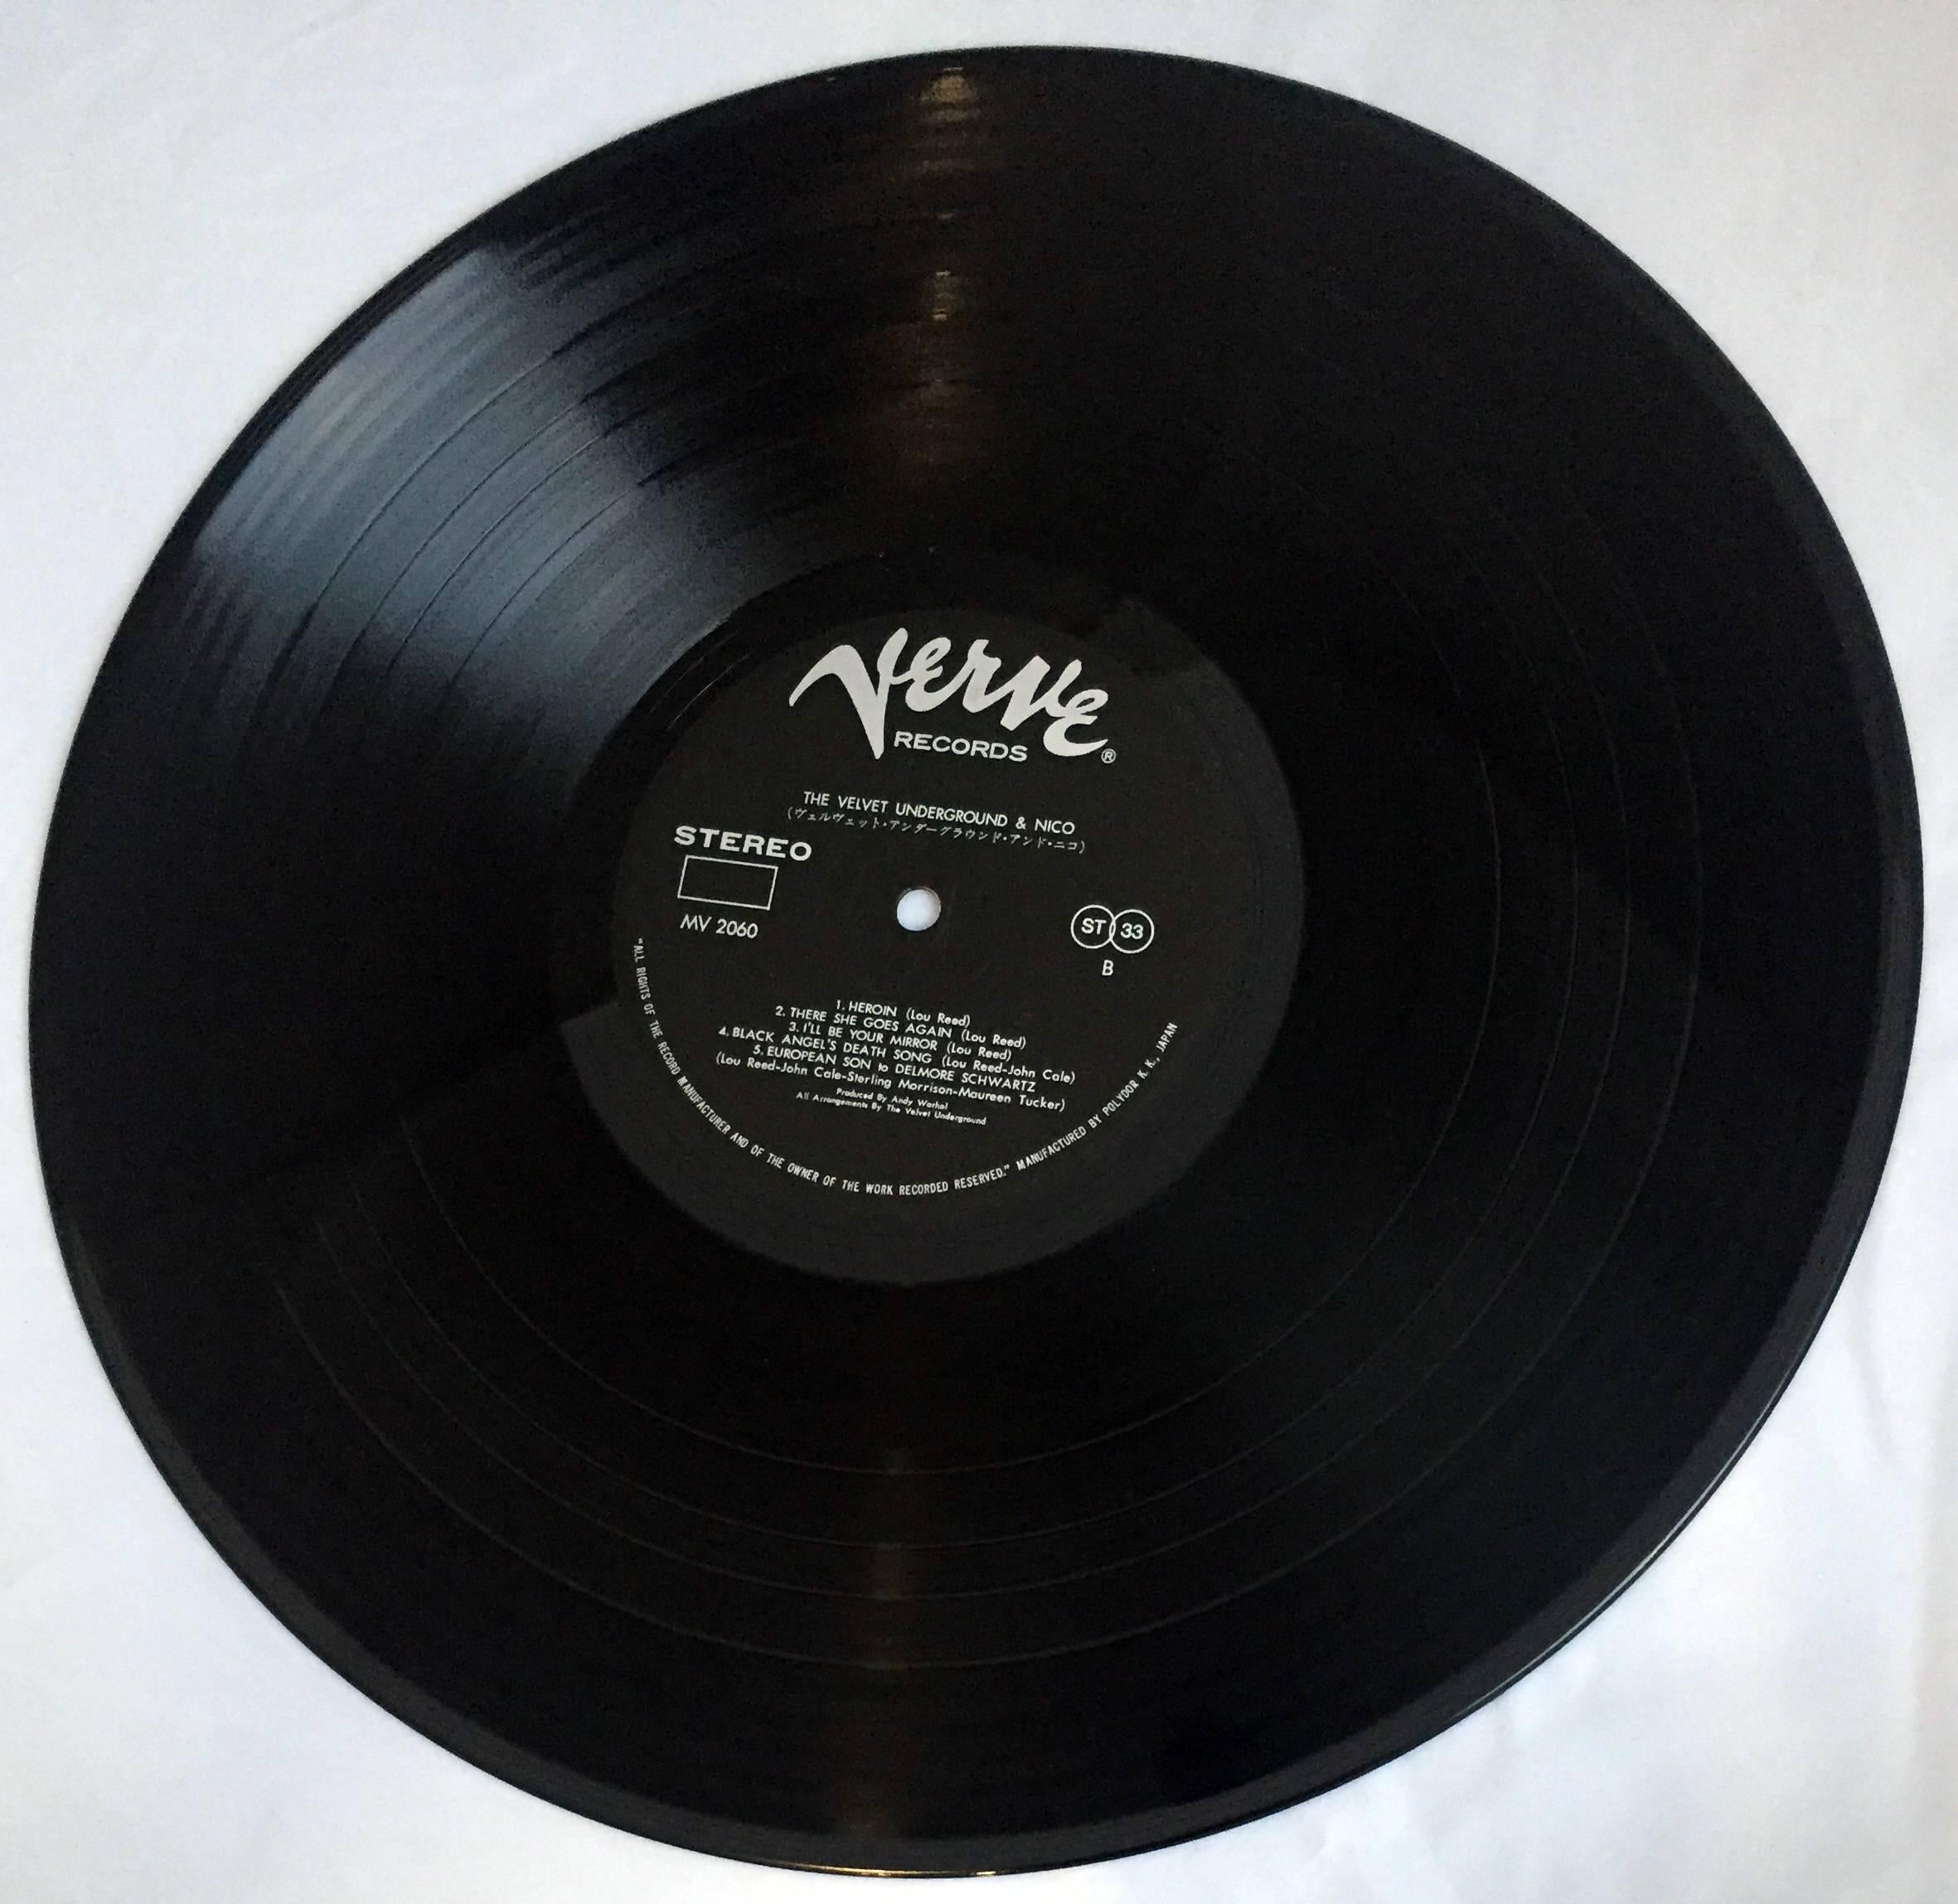  Warhol Banana Cover (Un-peeled), Nico & The Velvet Underground Vinyl Record 1